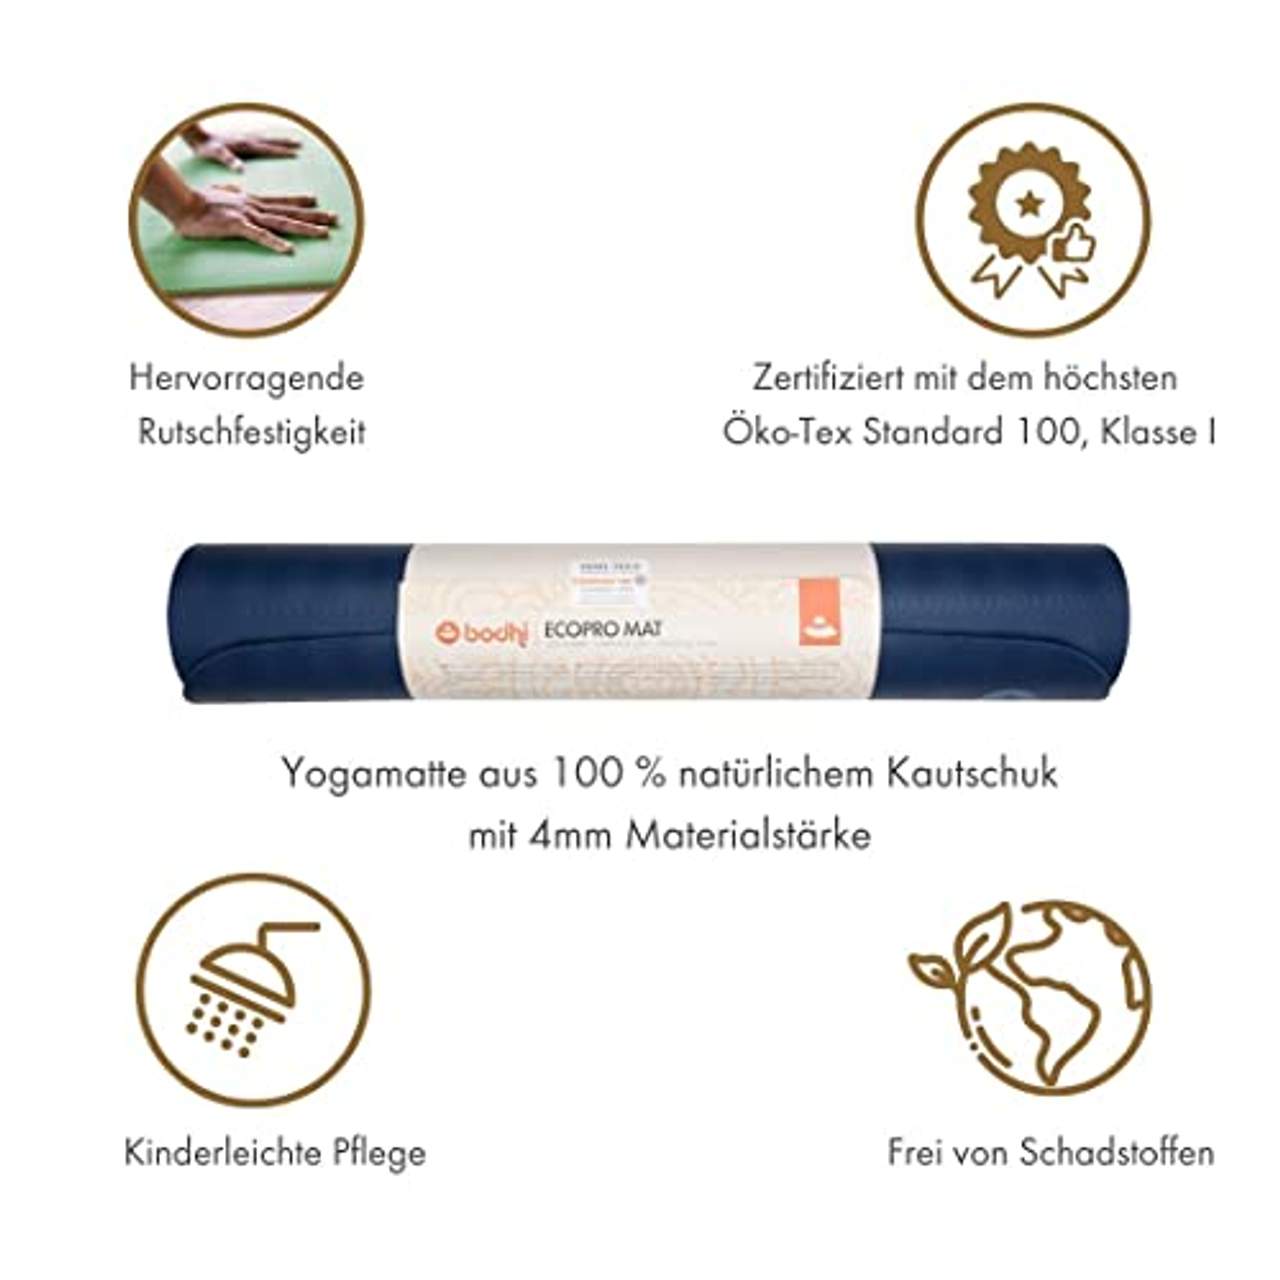 Bodhi extrem rutschfeste Yogamatte Ecopro aus 100% Natur-Kautschuk